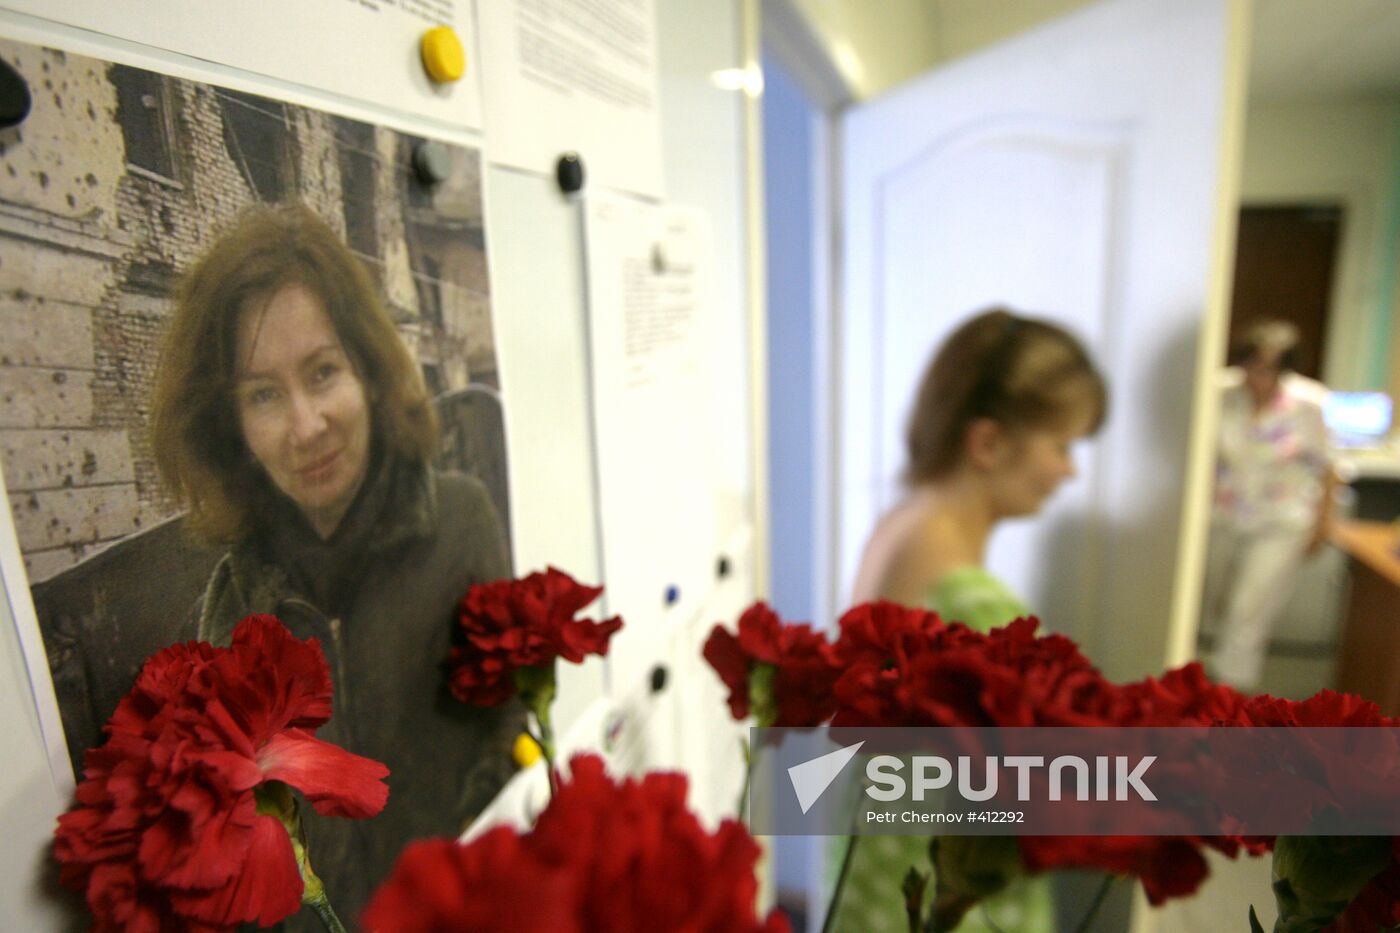 Human rights activist Natalia Estemirova murdered